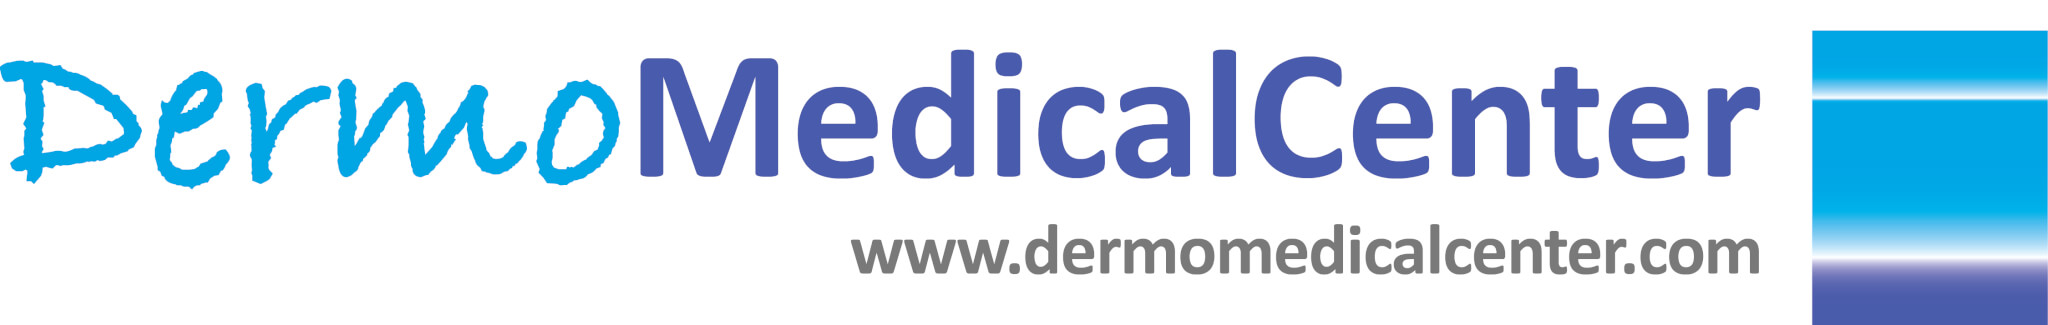 DermoMedicalCenter